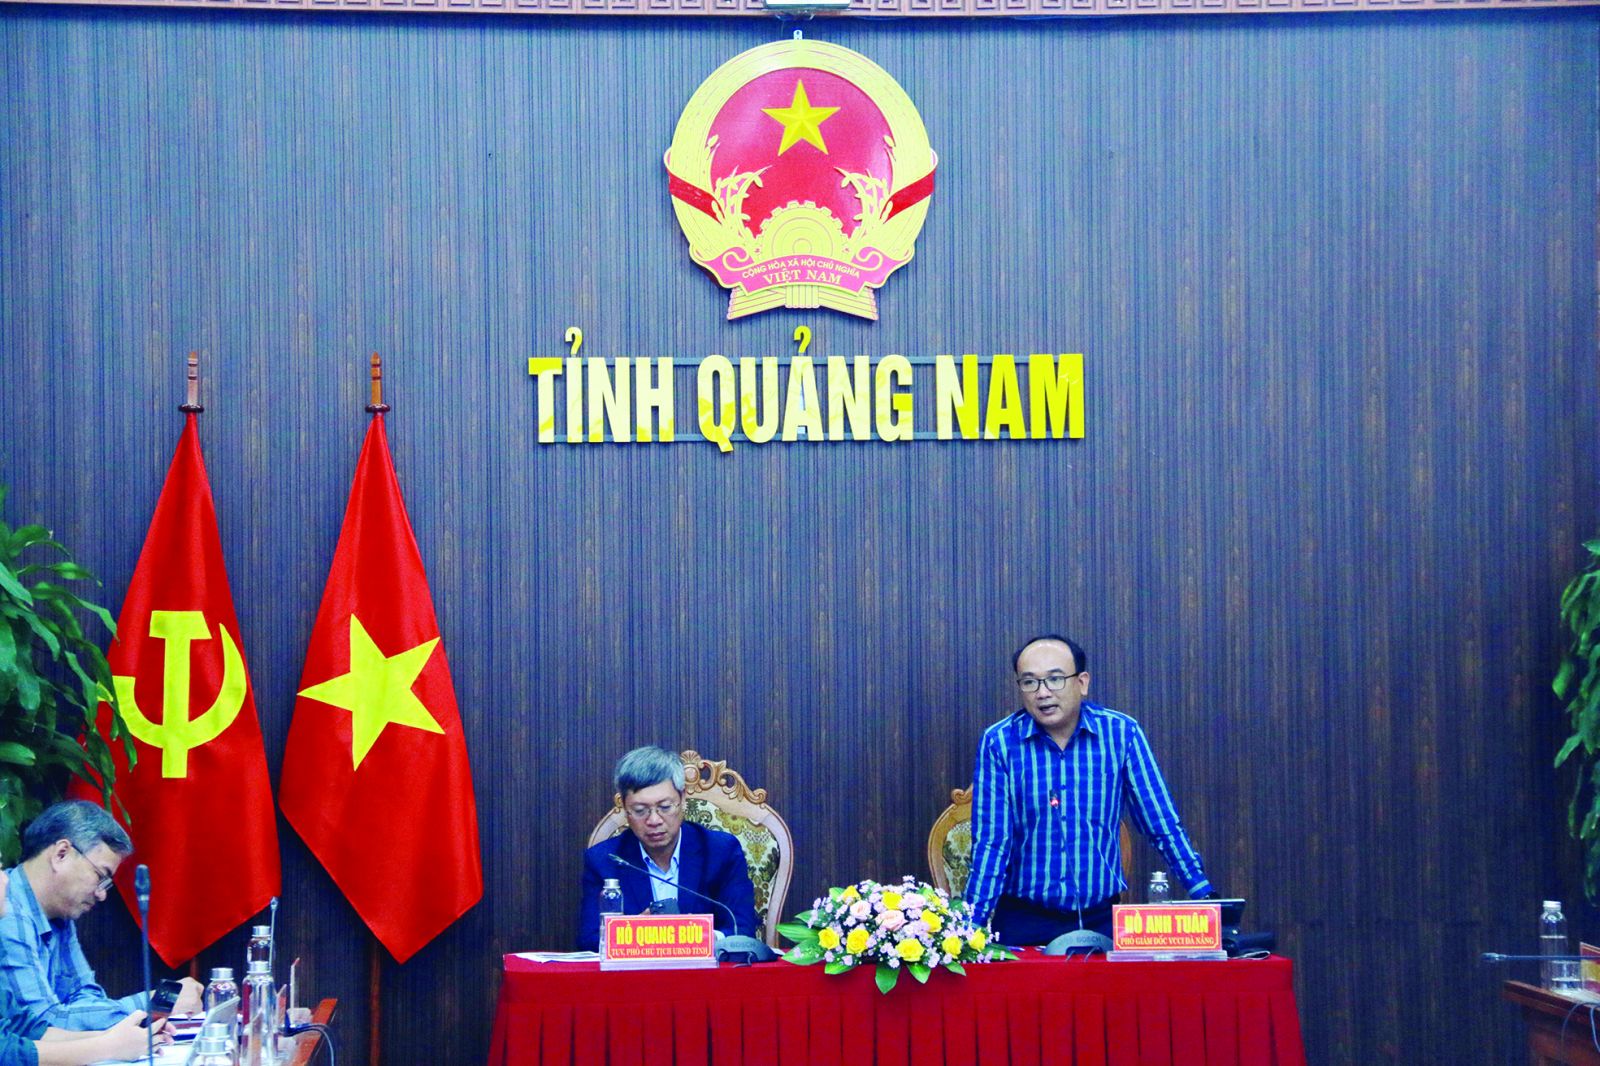  Từ kết quả chỉ số DDCI vào ngày 30/11 vừa qua, tỉnh Quảng Nam sẽ có những chỉ đạo, điều chỉnh cụ thể để cải thiện chỉ số PCI.